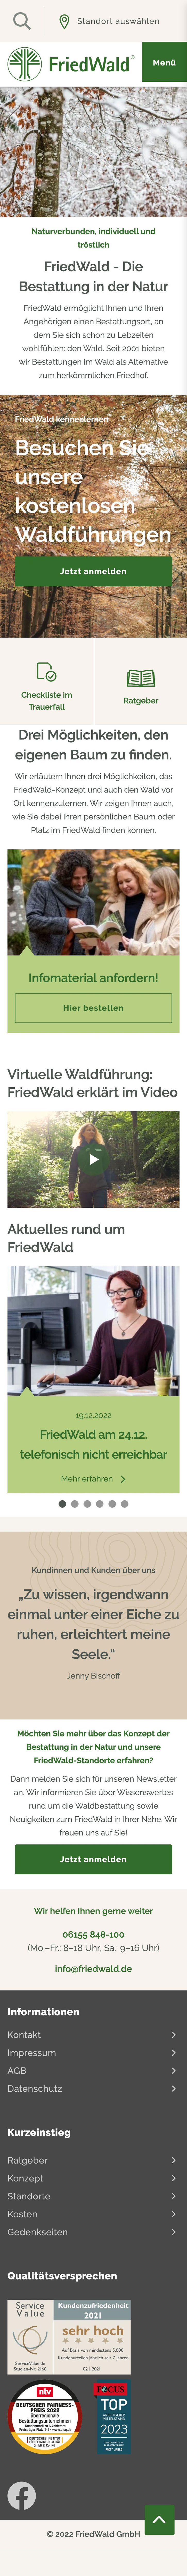 www.friedwald.de-1